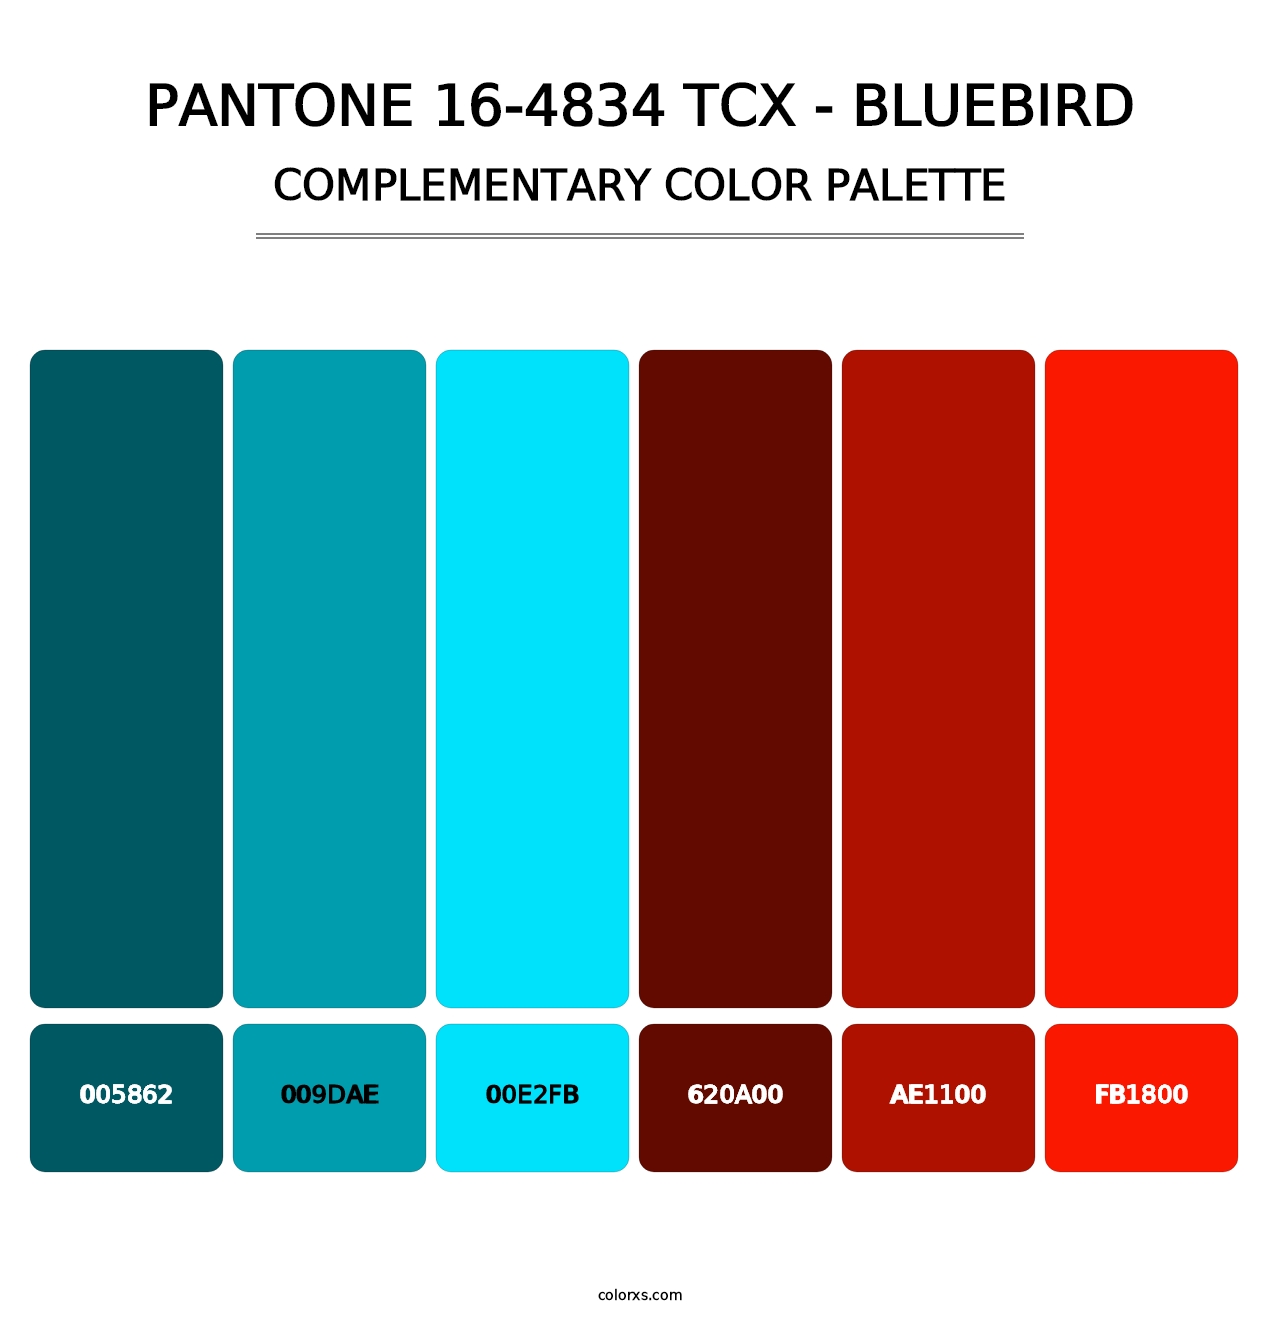 PANTONE 16-4834 TCX - Bluebird - Complementary Color Palette